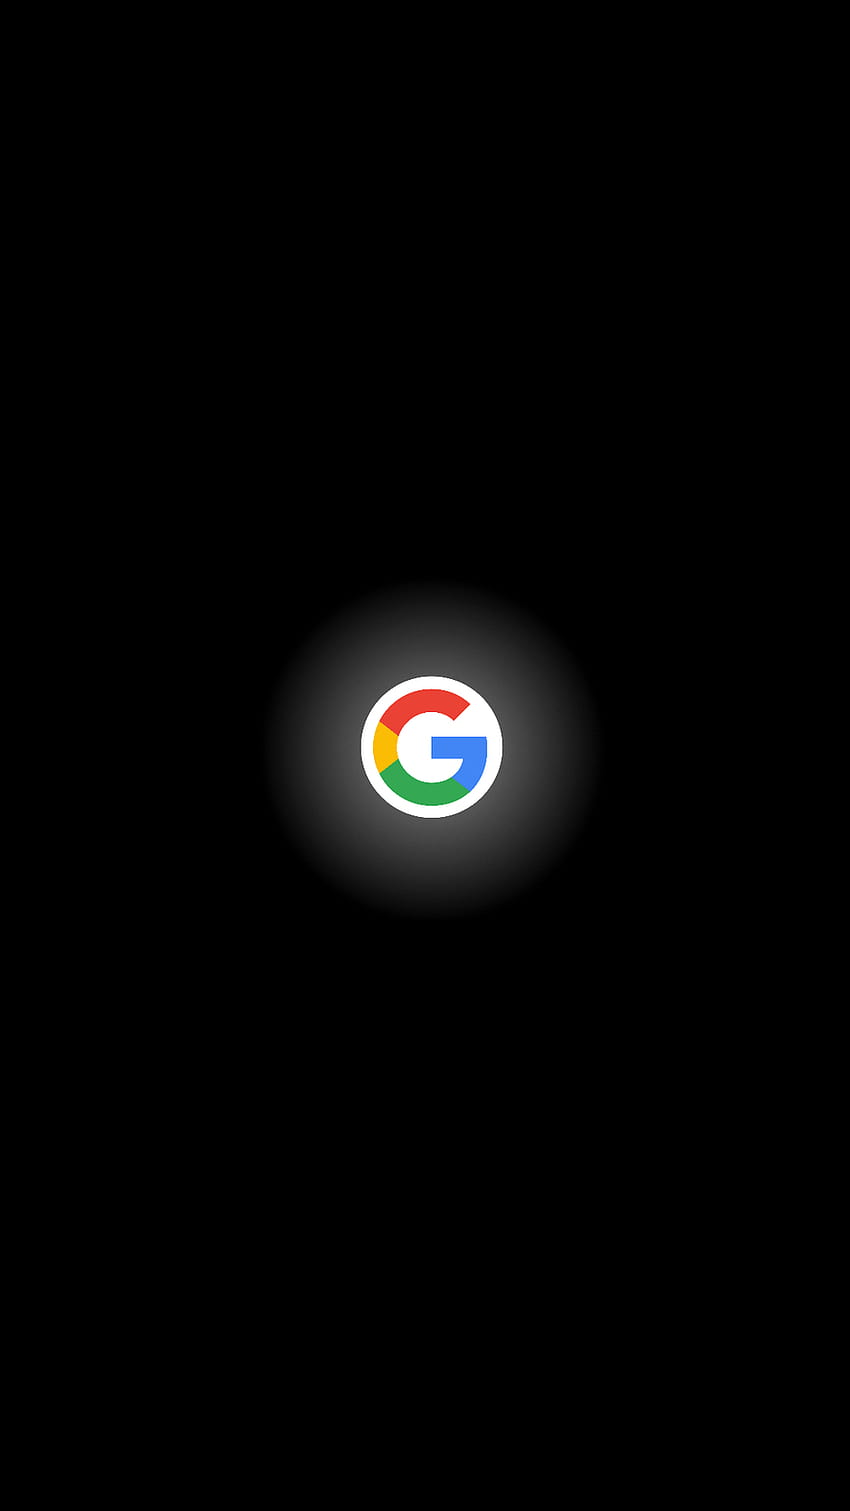 Minimal Google by papetto, logo google per cellulari Sfondo del telefono HD